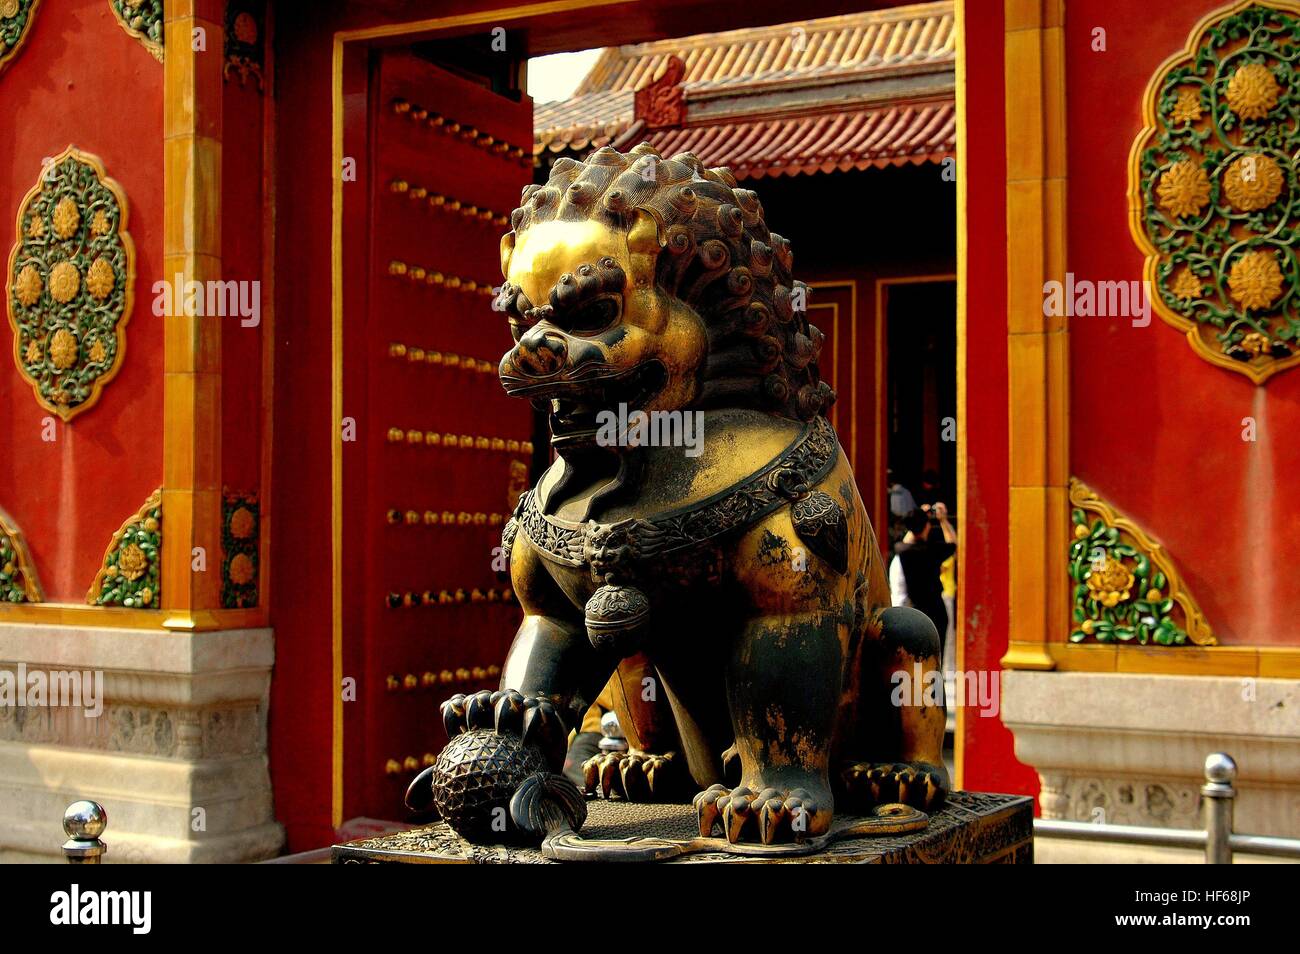 Beijing, Chine - le 2 mai 2005 : un lion en bronze doré guards une porte d'entrée à l'Chang Chung Palais dans la Cité Interdite Banque D'Images